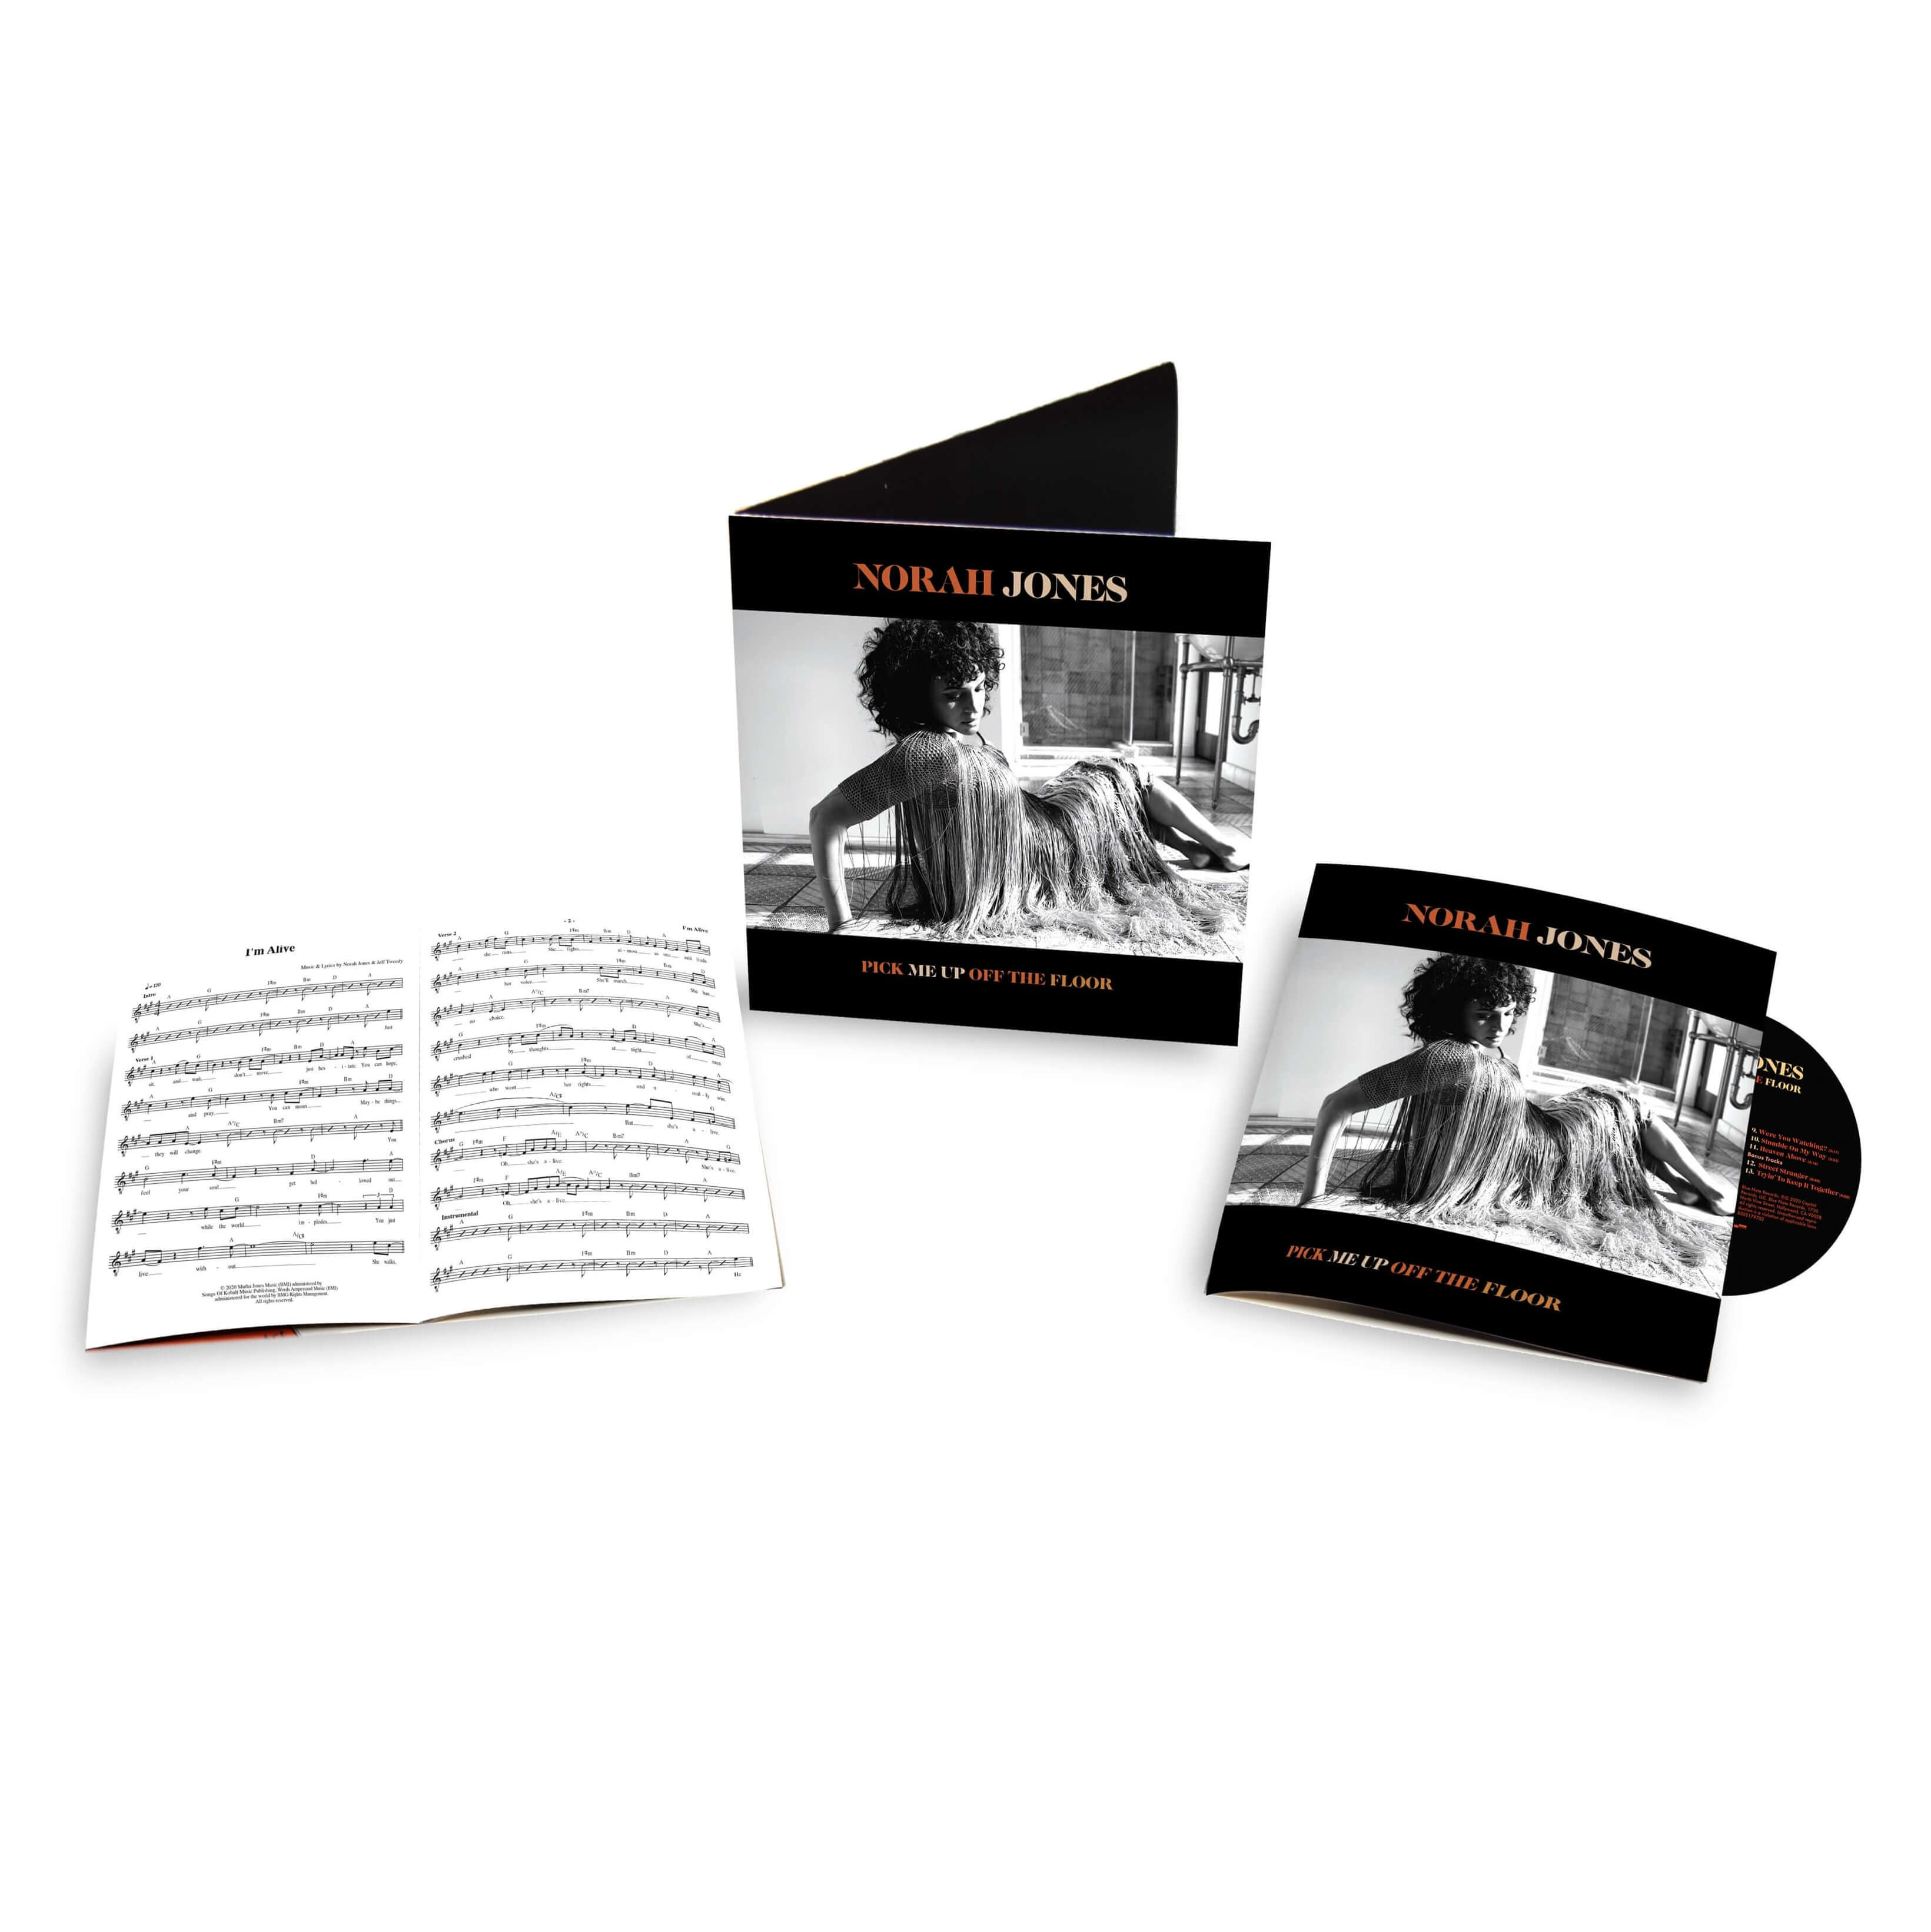 Norah Jones, Pick Me Up Off The Floor (Ltd. Deluxe Edition), CD